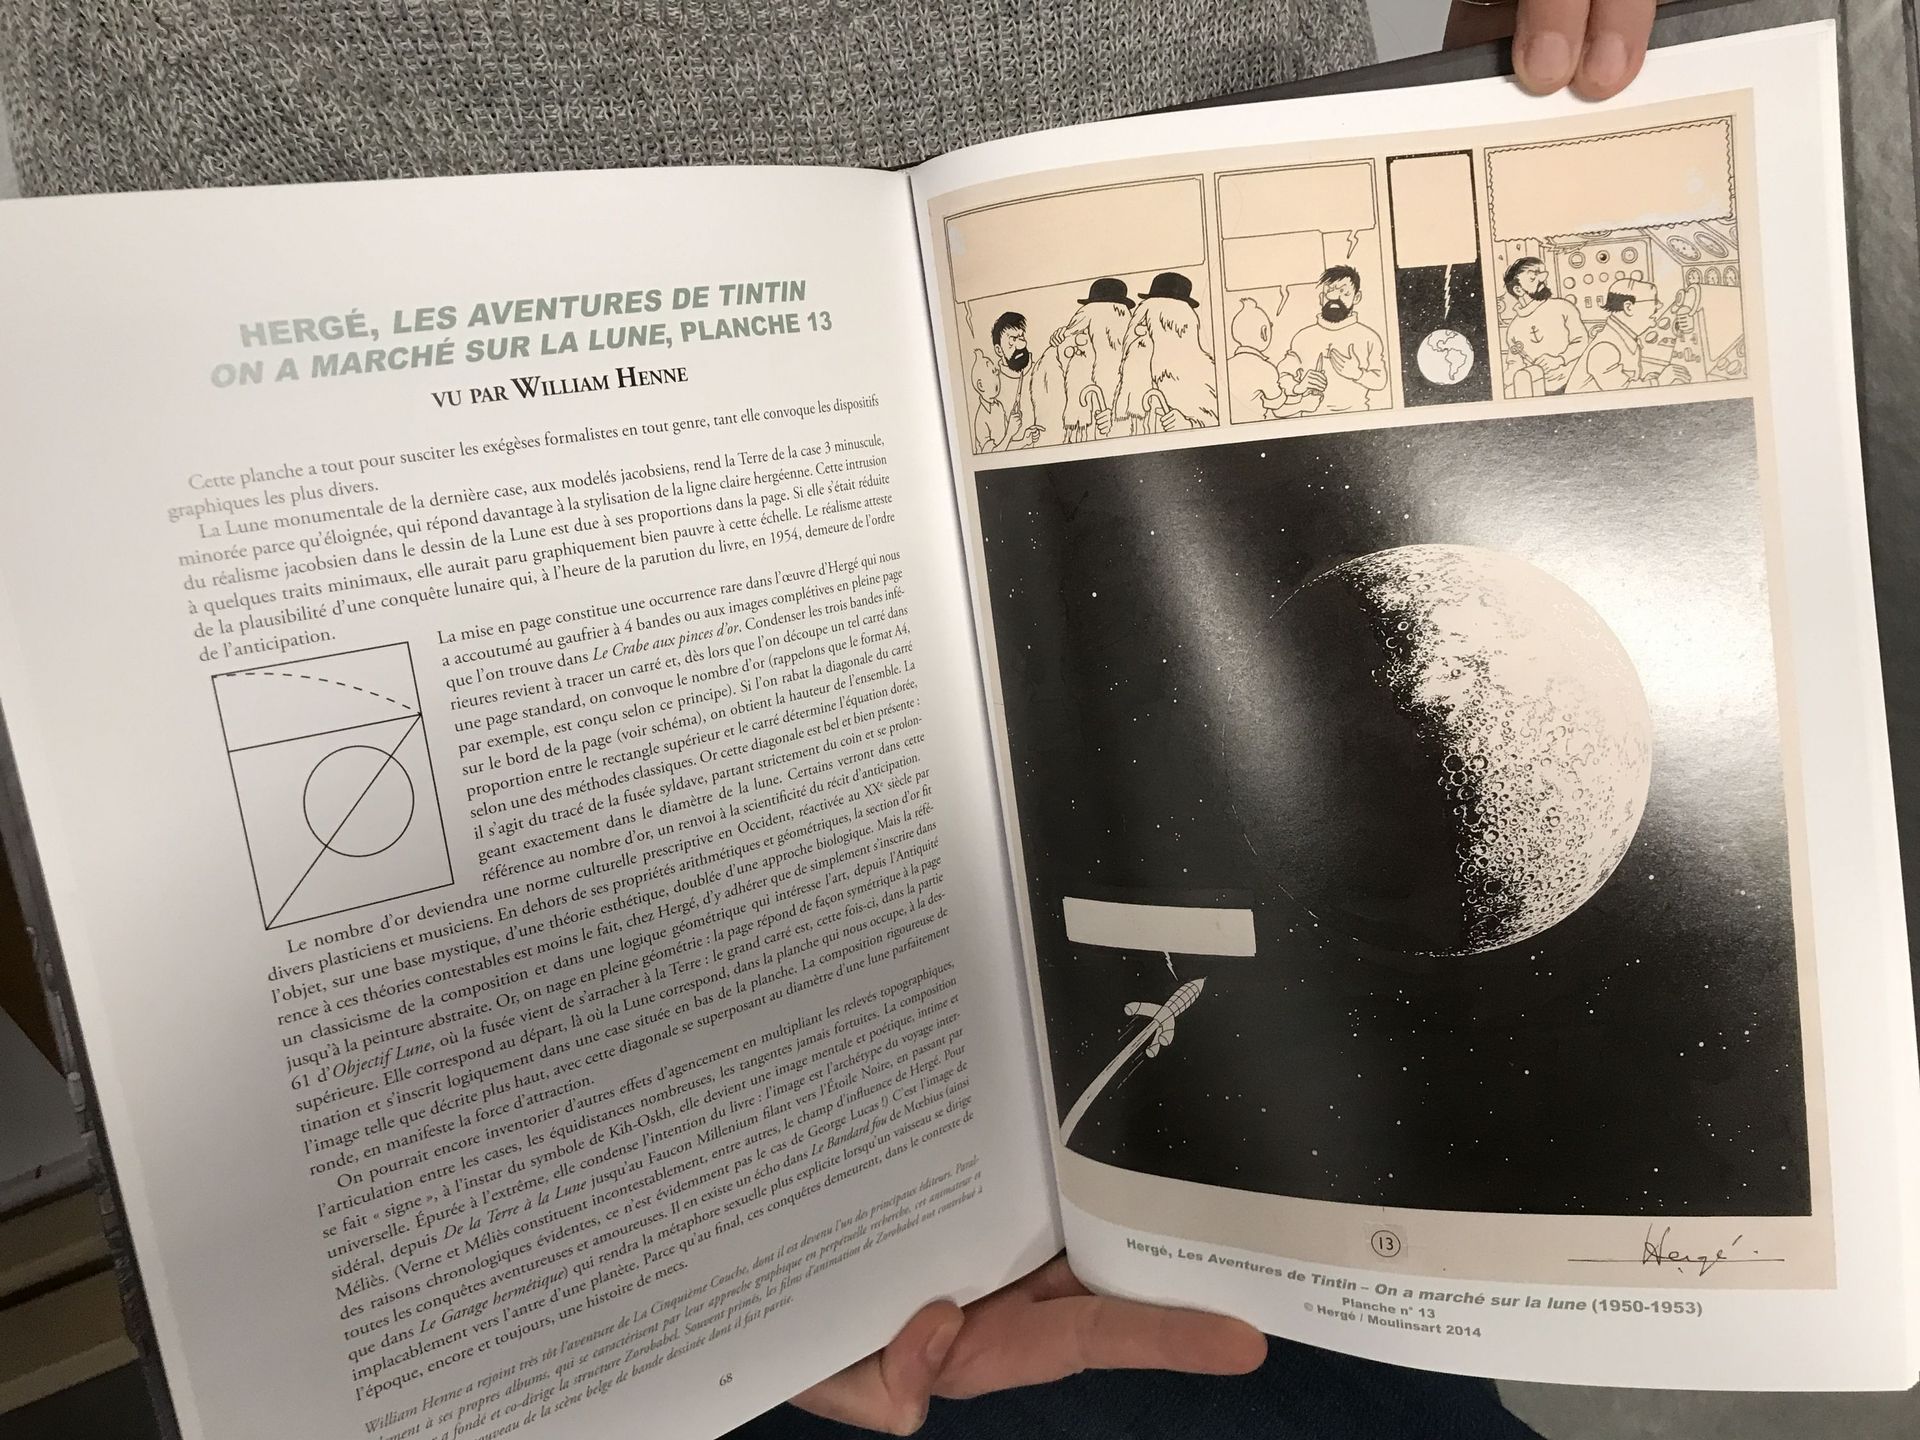 Le fonds liégeois possède deux planches originales d'Hergé de l'album "On a marché sur la lune"